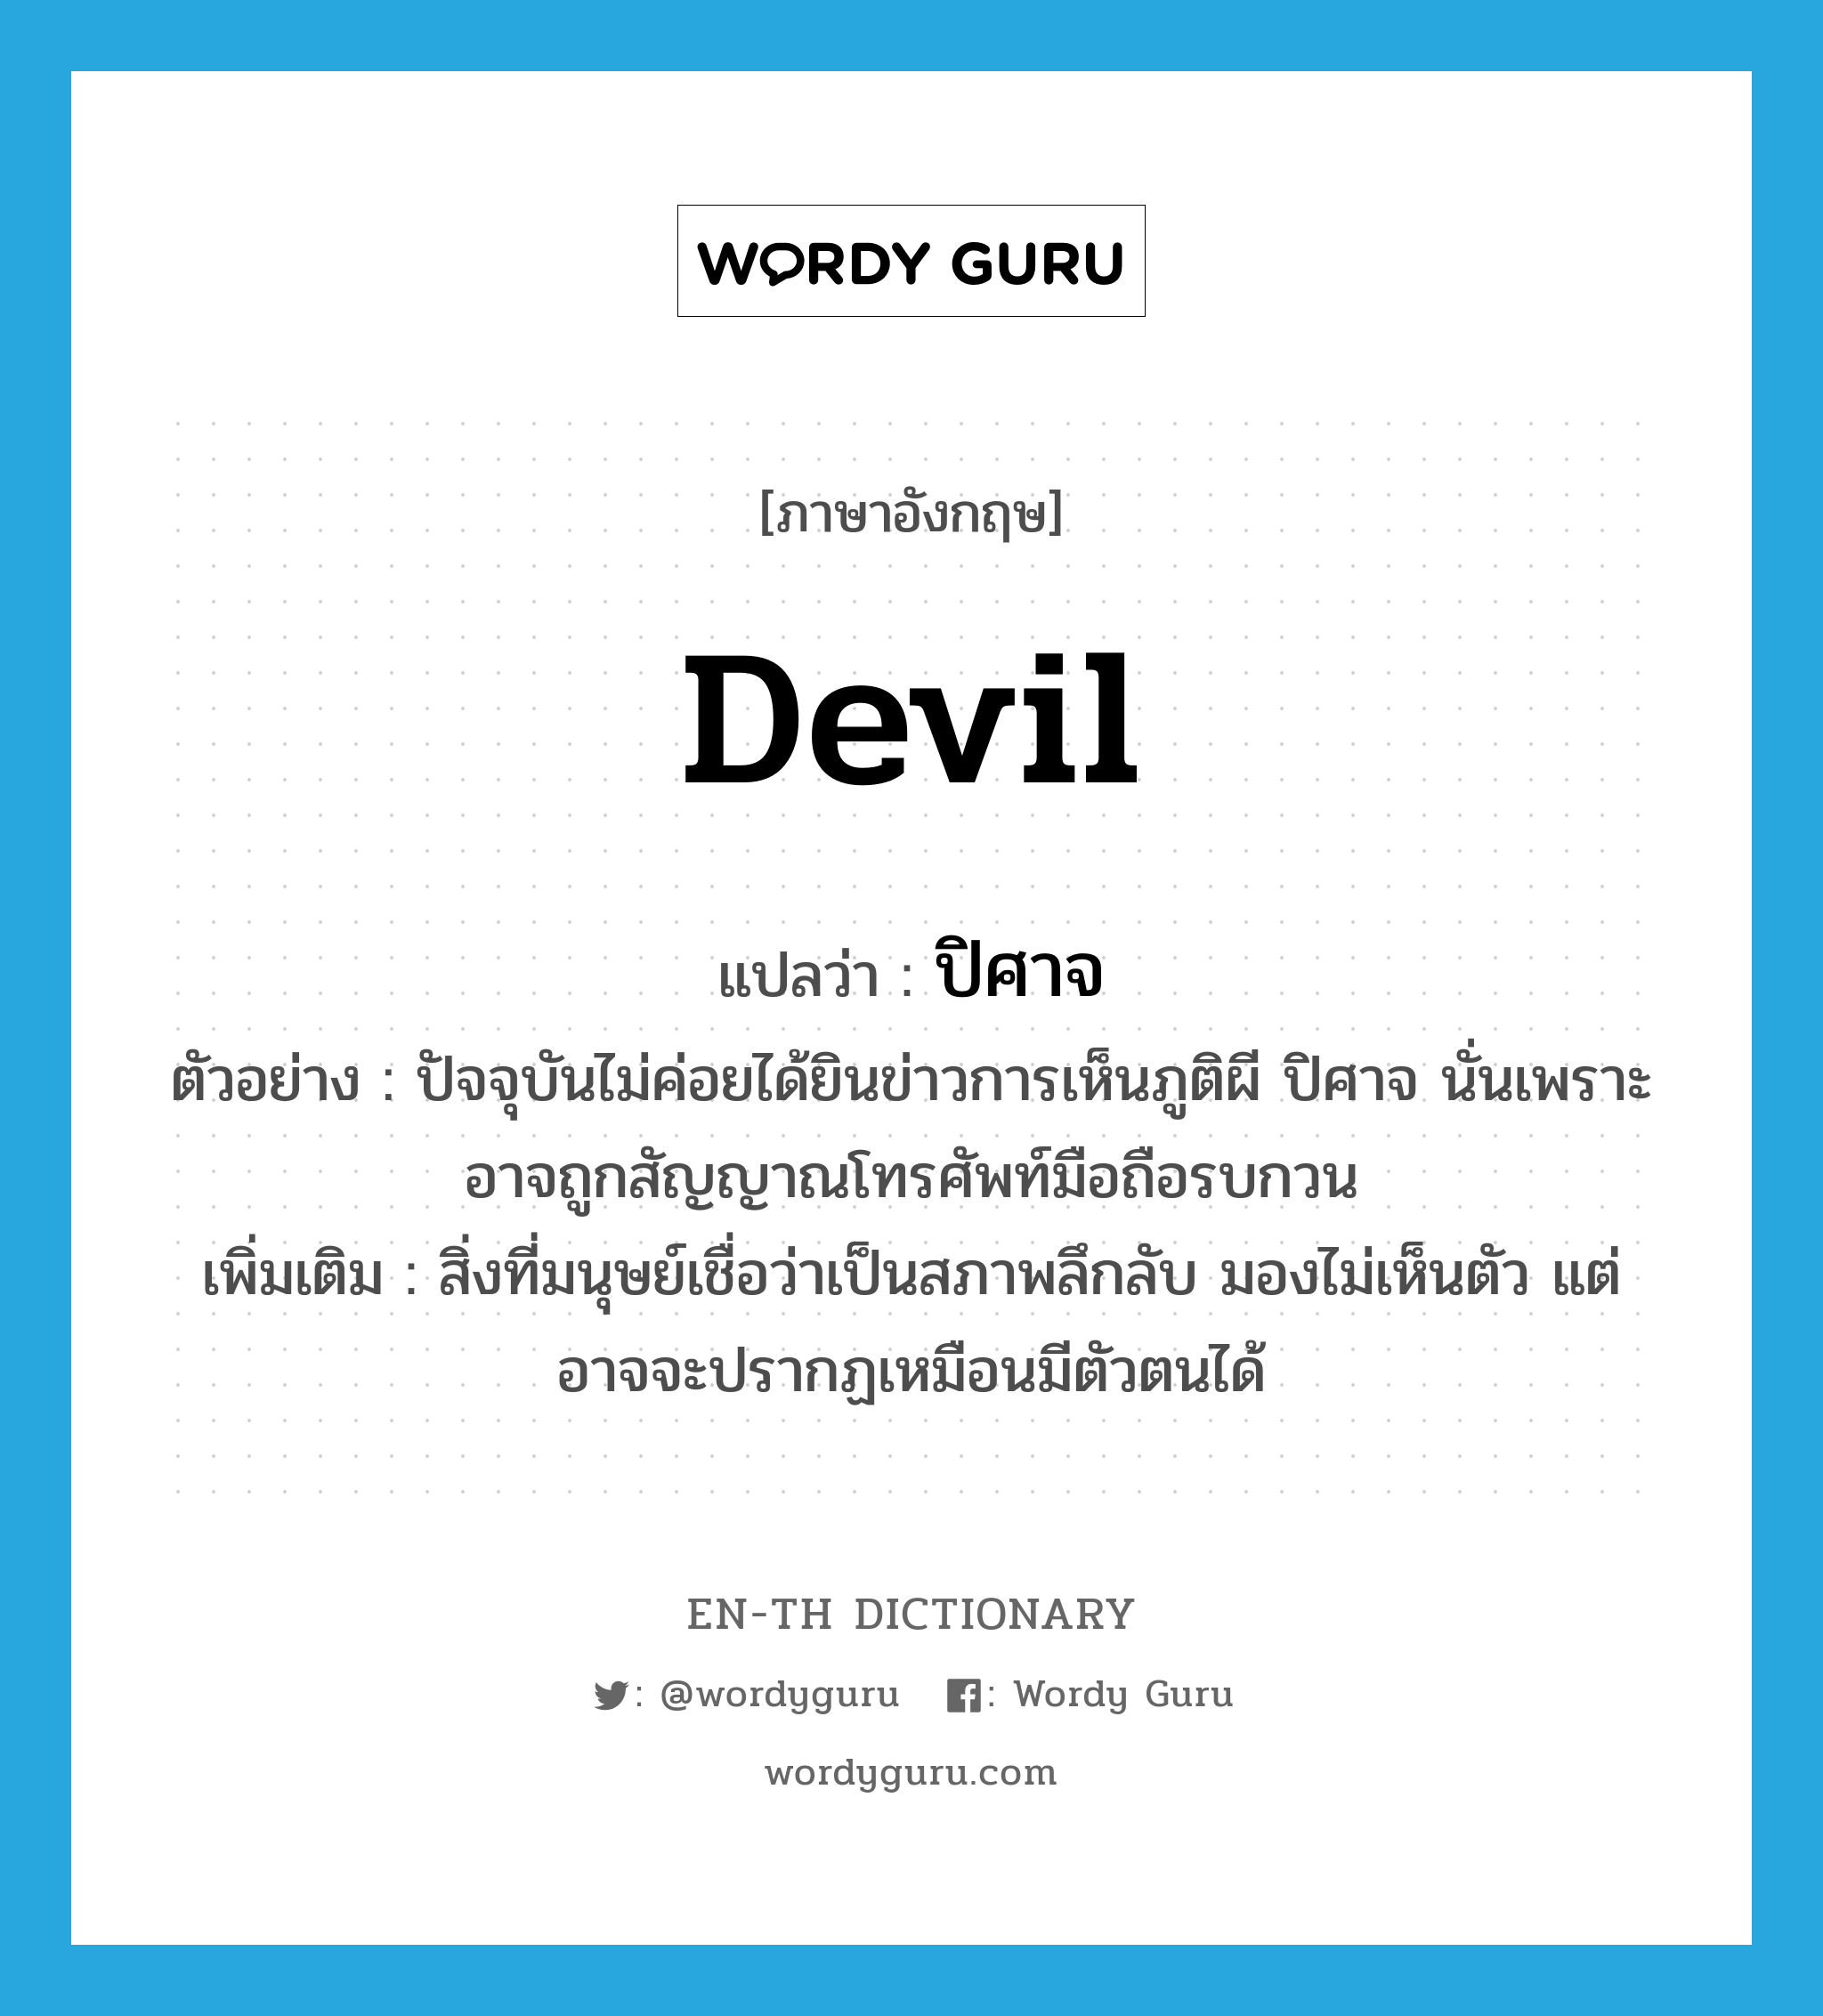 devil แปลว่า?, คำศัพท์ภาษาอังกฤษ devil แปลว่า ปิศาจ ประเภท N ตัวอย่าง ปัจจุบันไม่ค่อยได้ยินข่าวการเห็นภูติผี ปิศาจ นั่นเพราะอาจถูกสัญญาณโทรศัพท์มือถือรบกวน เพิ่มเติม สิ่งที่มนุษย์เชื่อว่าเป็นสภาพลึกลับ มองไม่เห็นตัว แต่อาจจะปรากฏเหมือนมีตัวตนได้ หมวด N